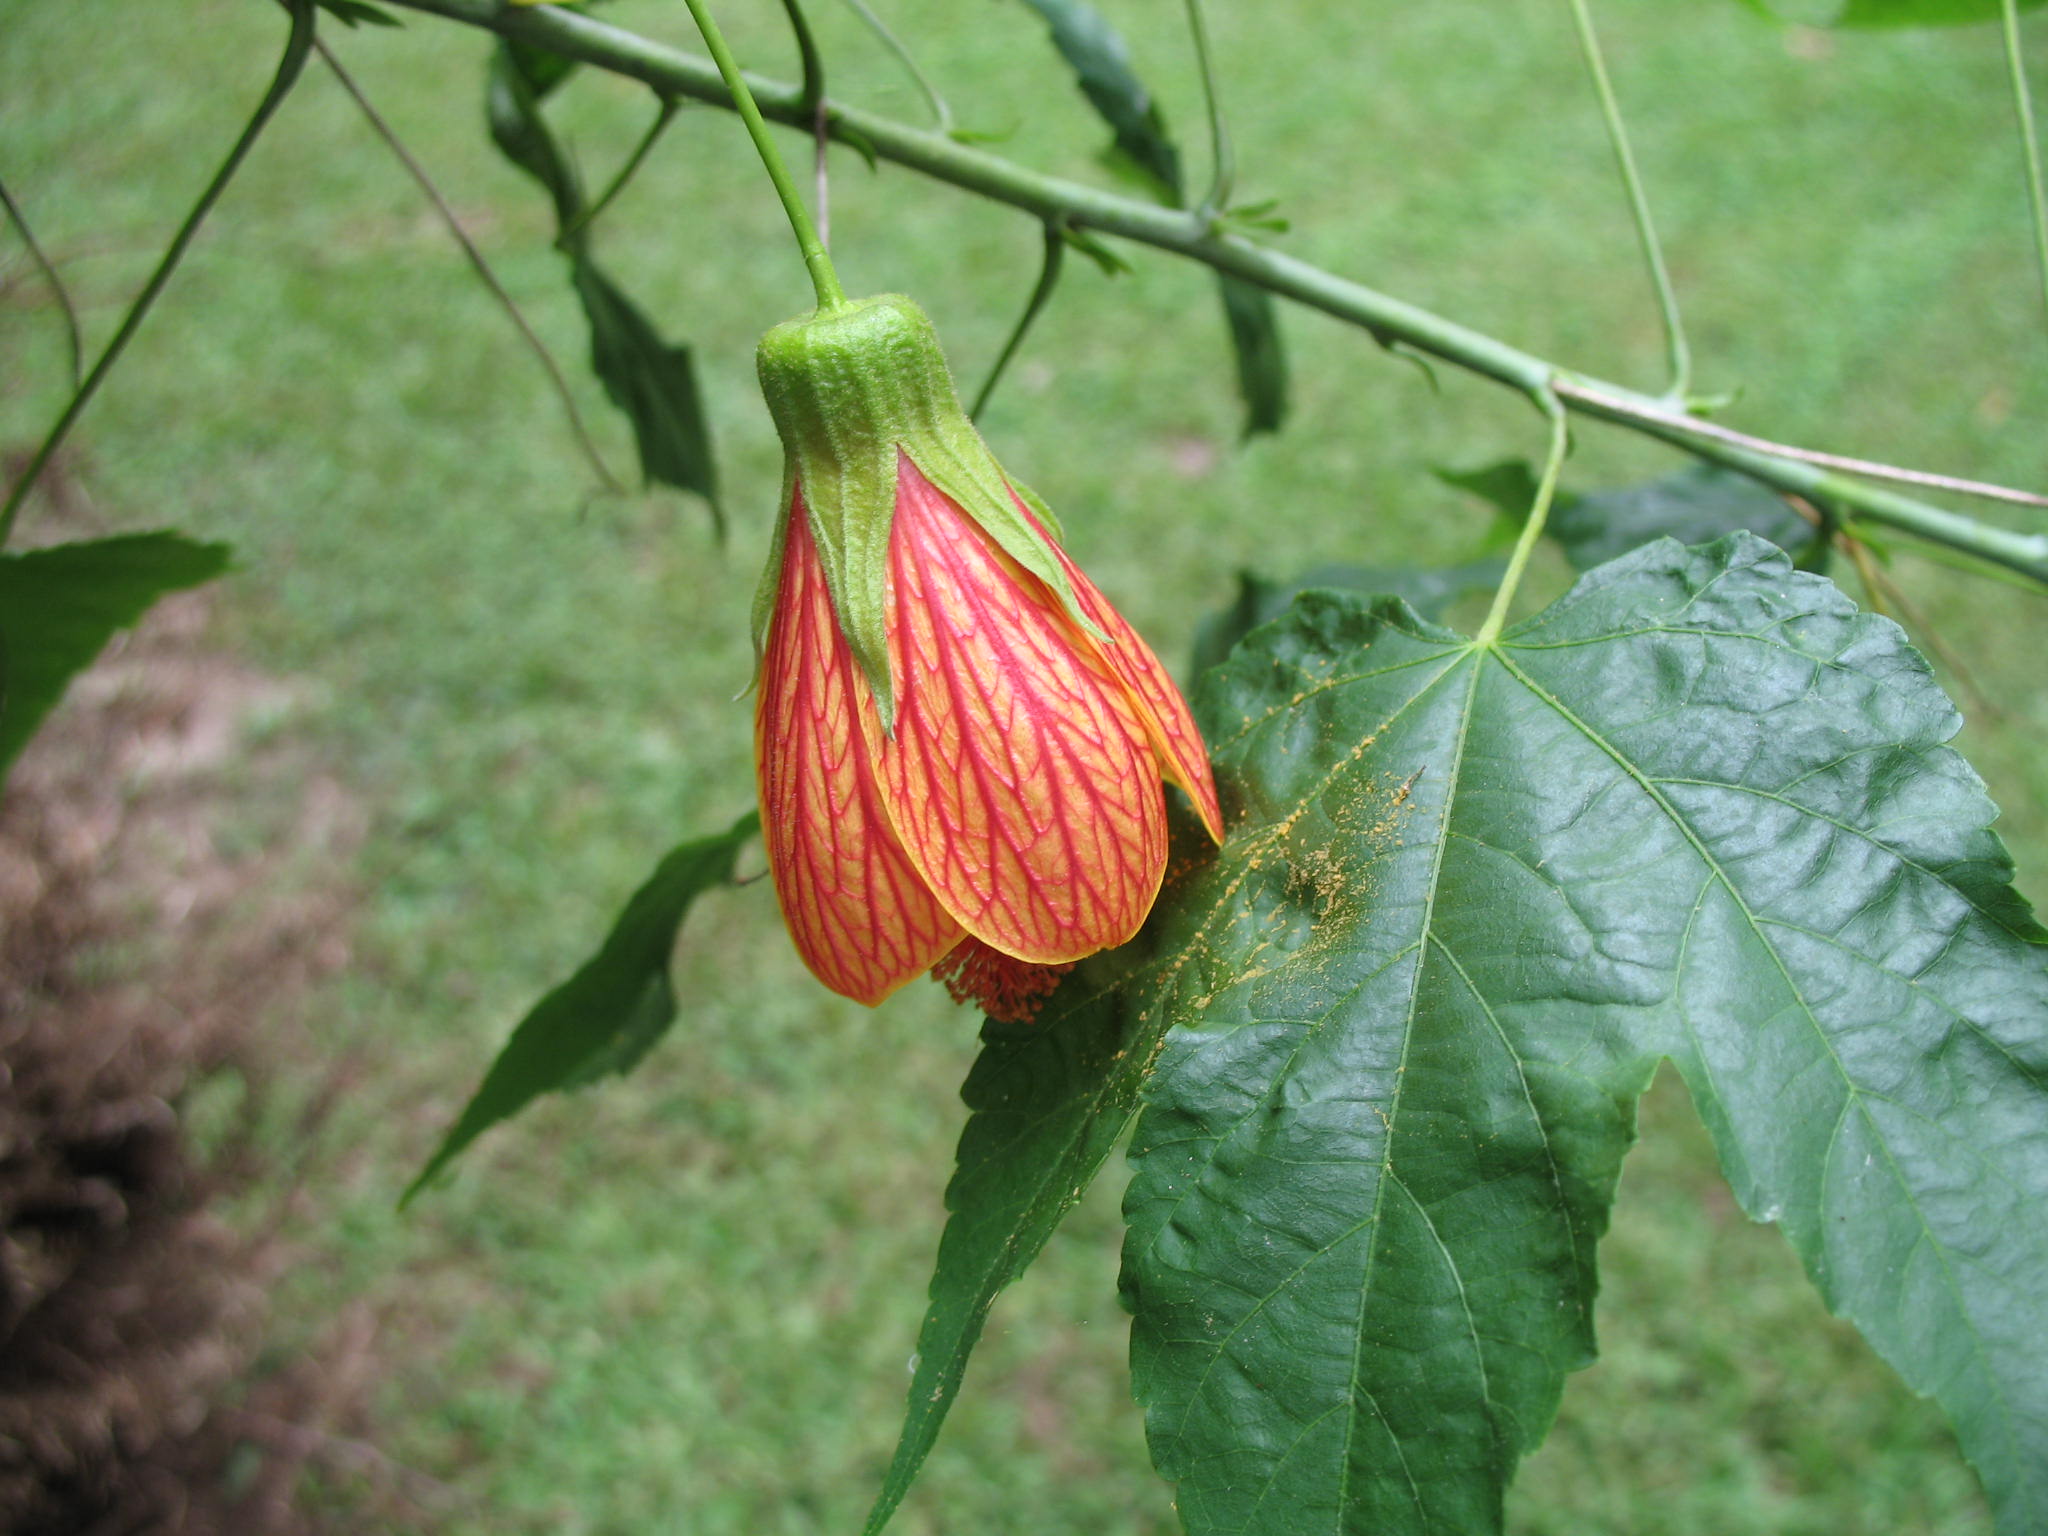 Abutilon pictum / Flowering Maple